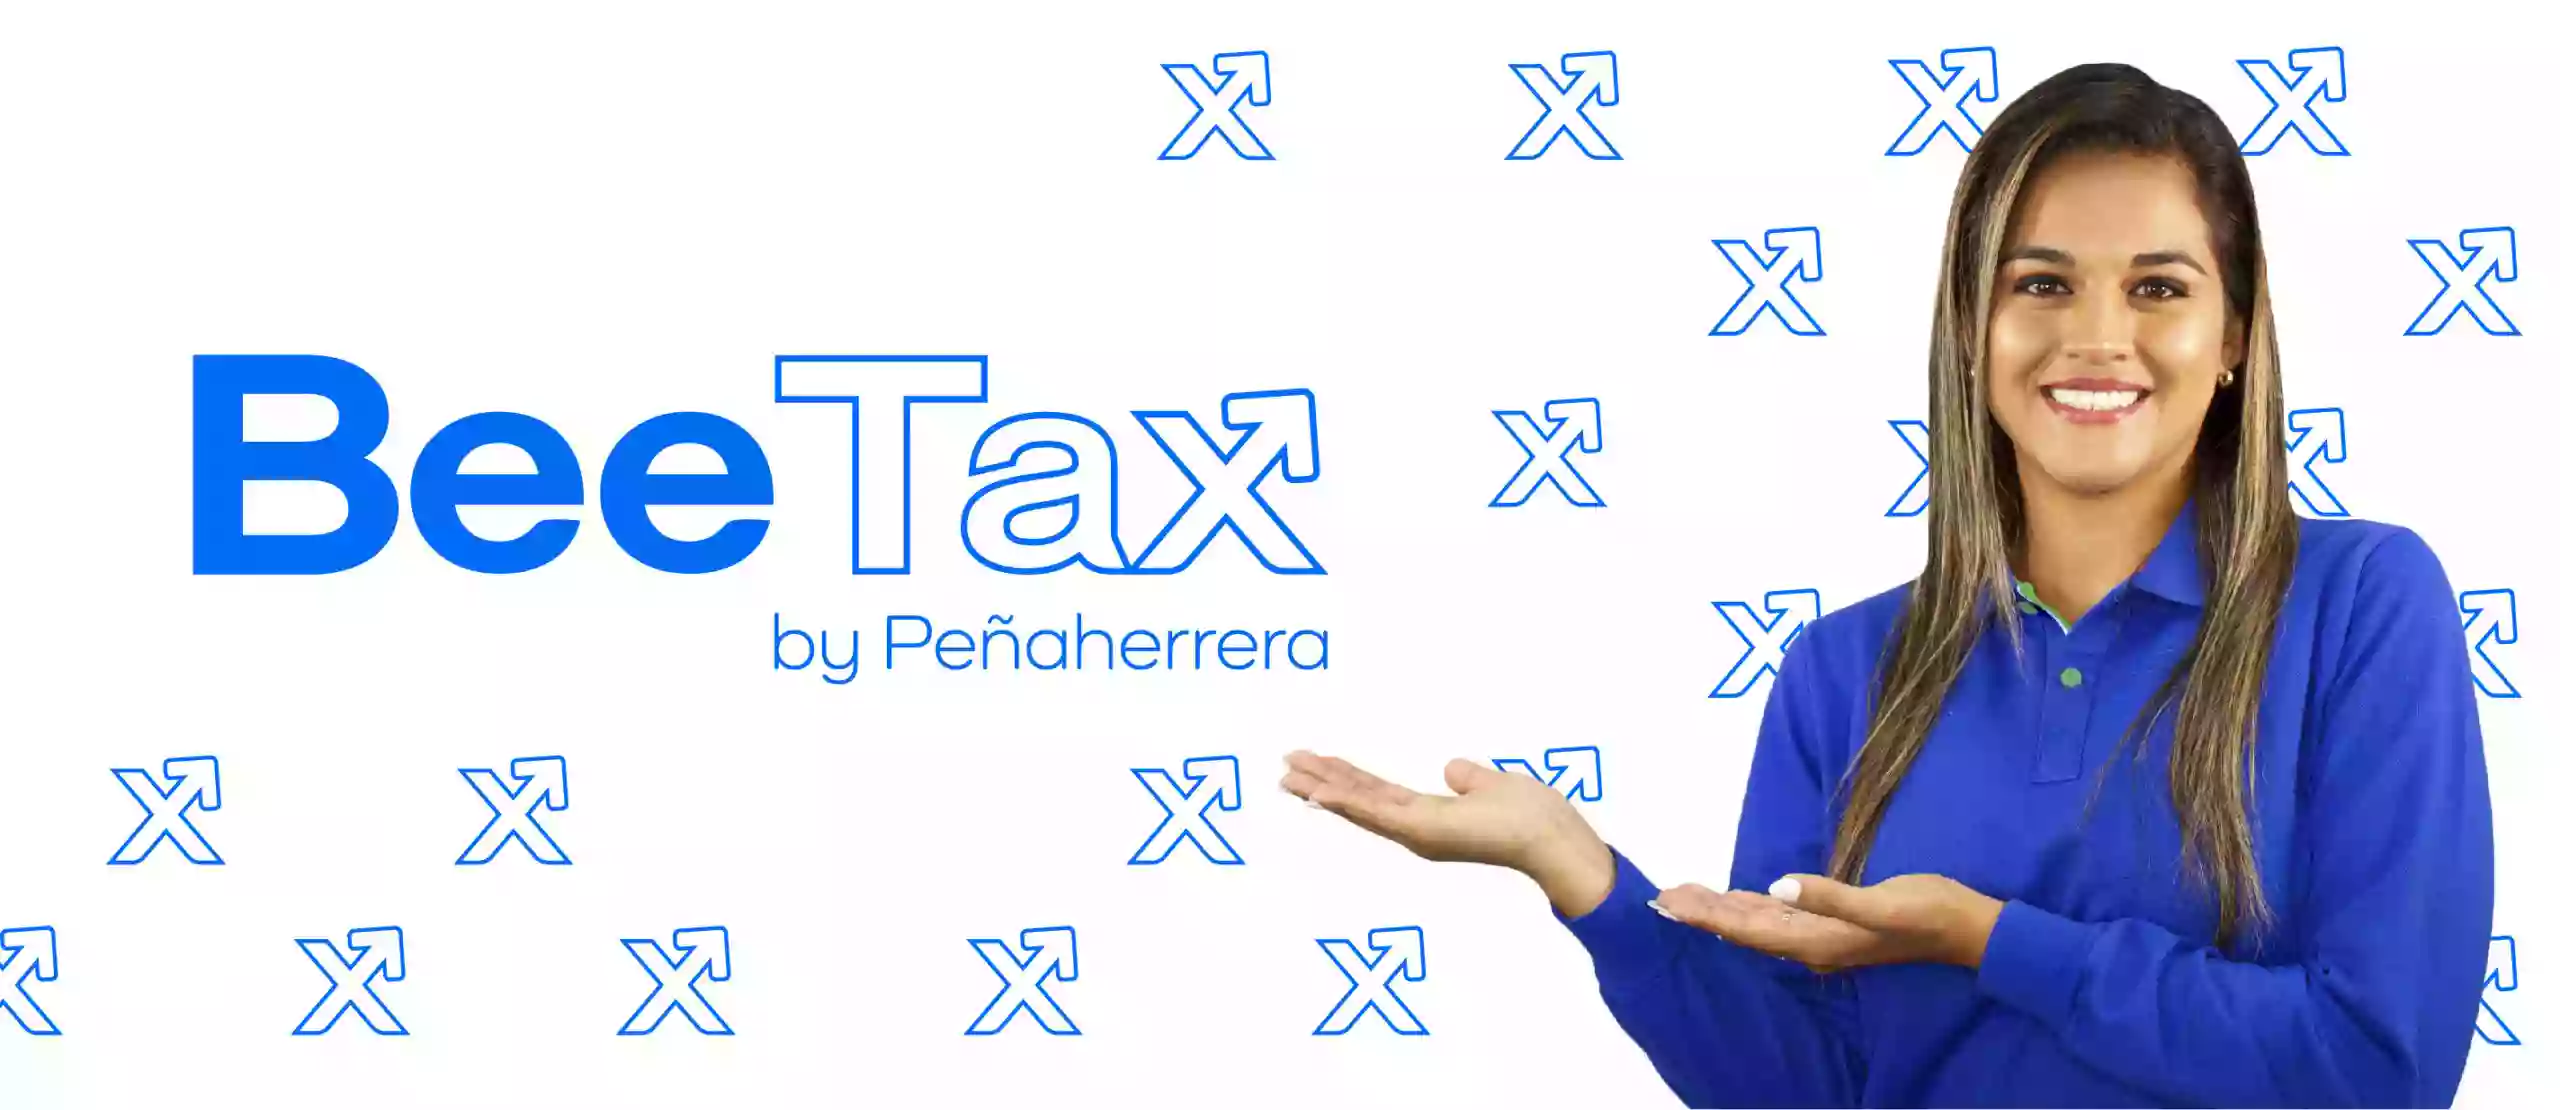 BeeTax Charlotte - Latino Tax service